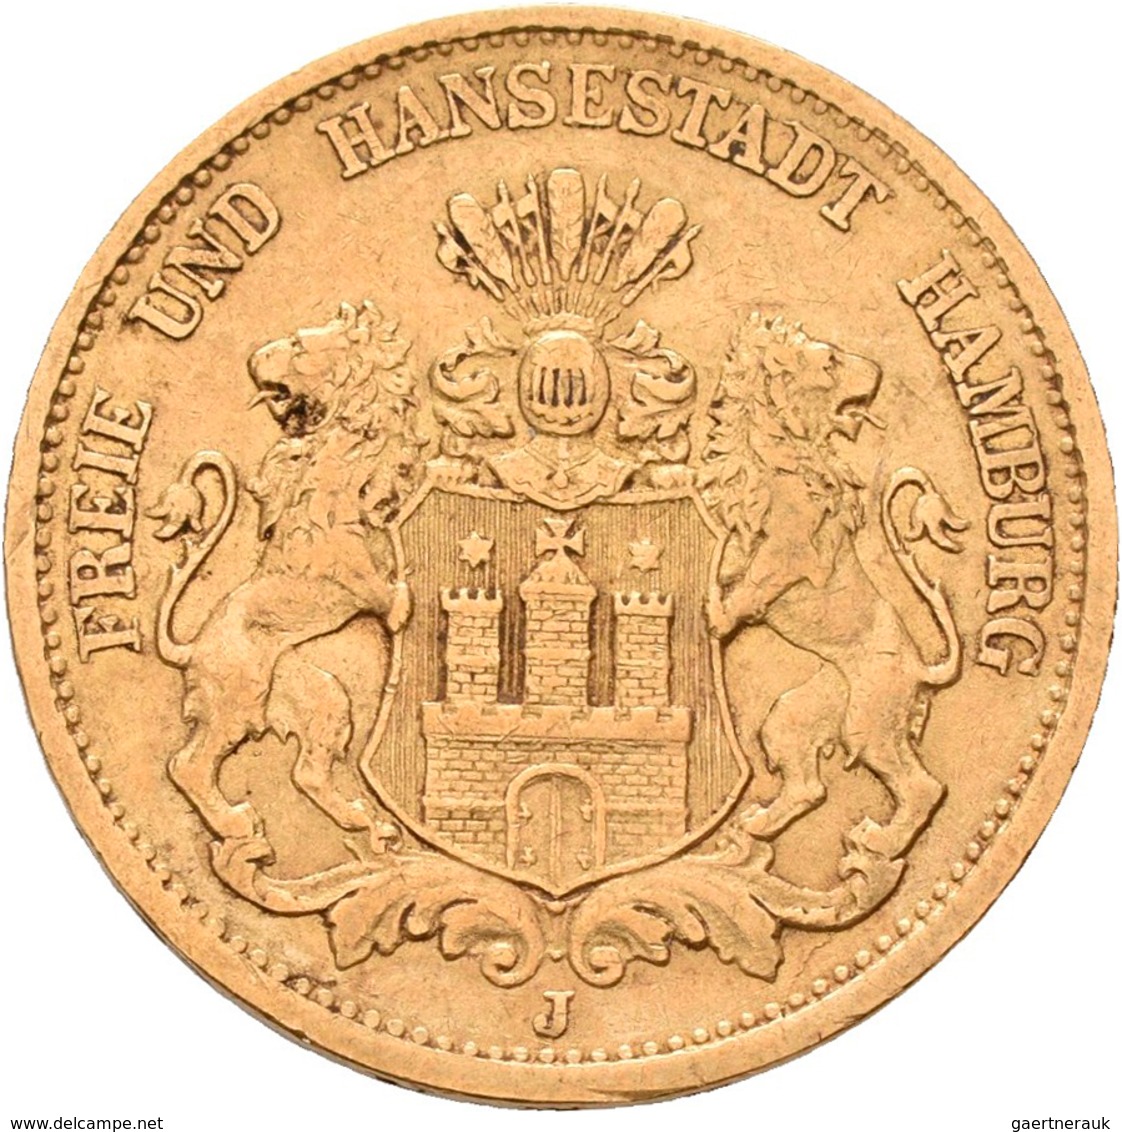 Hamburg: Freie Und Hansestadt: 20 Mark 1877 J, Jaeger 210. 7,92 G, 900/1000 Gold, Sehr Schön. - Gold Coins